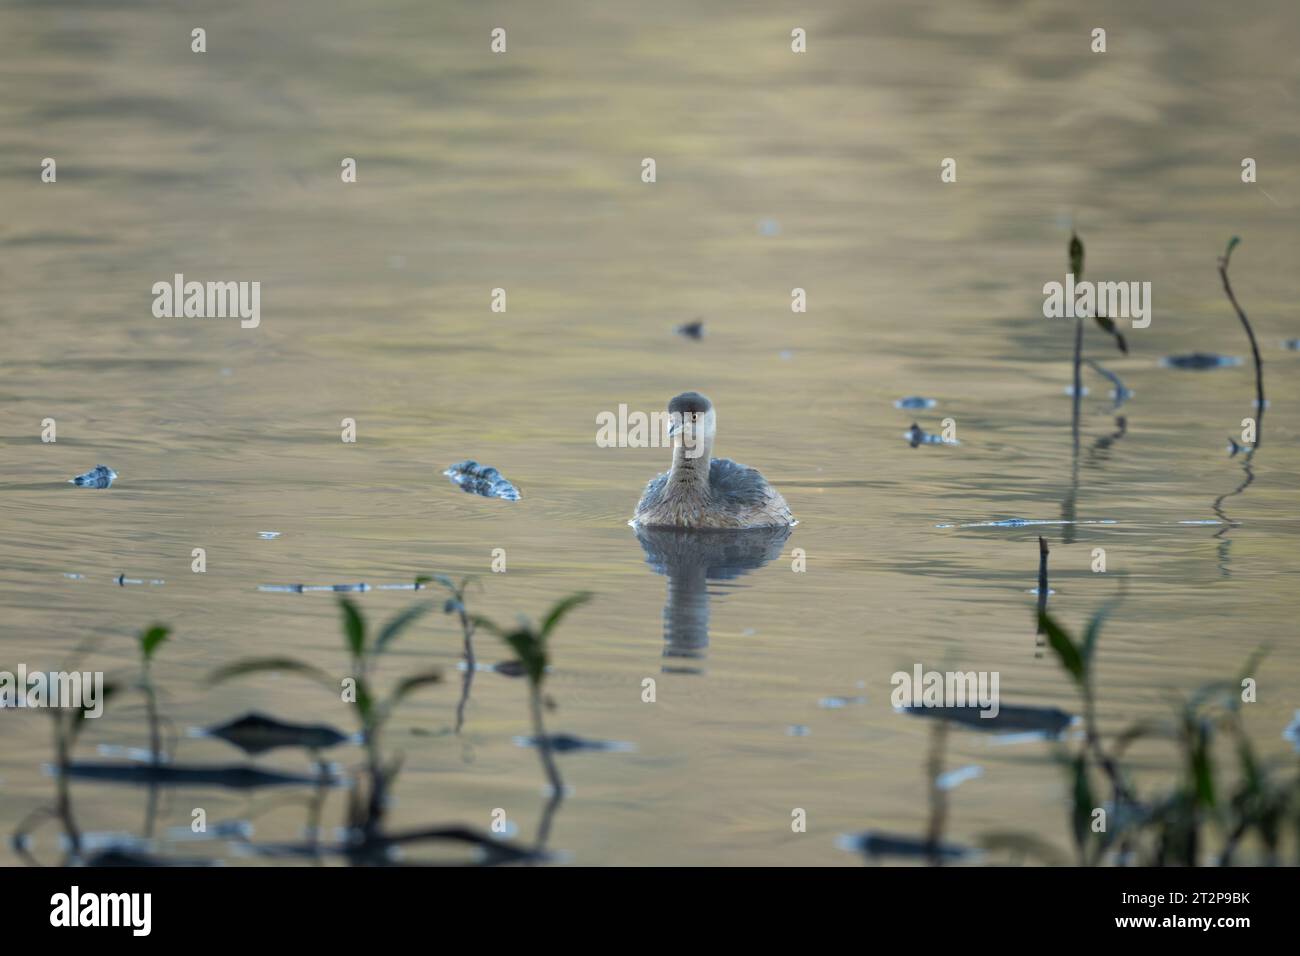 Ein australasischer Grebe schwimmt vorwärts zwischen der Vegetation am Ufer des Hasties Swamp in den Nyleta Wetlands in Atherton, Auistralia. Stockfoto